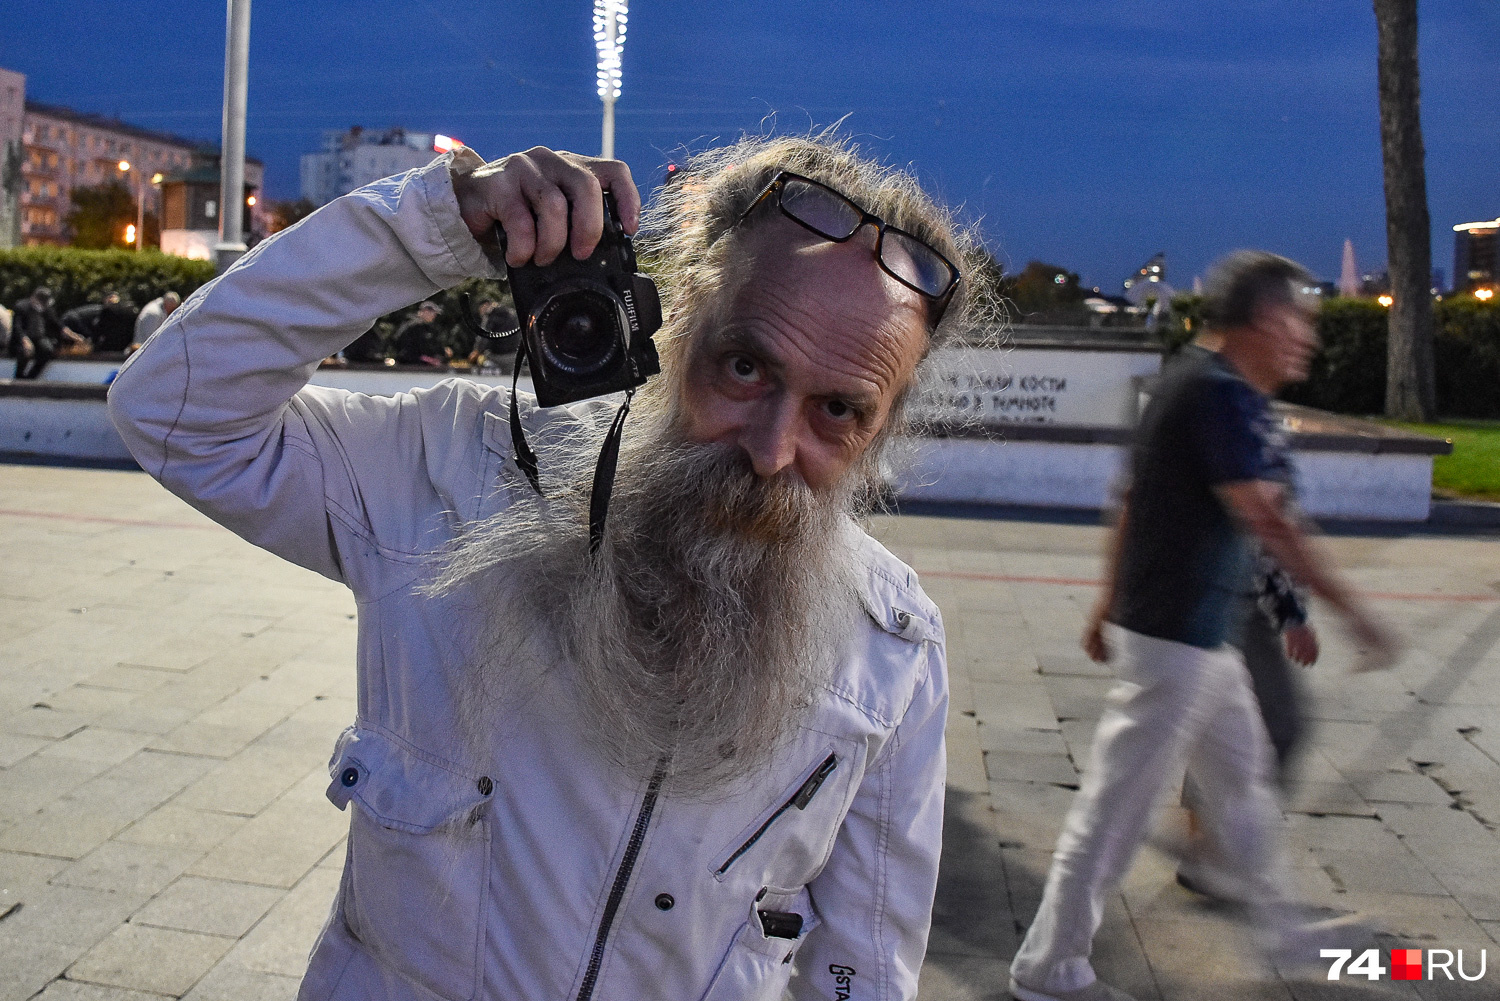 Местная знаменитость Екатеринбурга, уличный фотограф Алексей Рагозин сам подошел ко мне: говорили, конечно, о фотоаппаратах. Мне на ум пришла ассоциация с челябинским «зачетным дедом» Александром Шкроботом (на фото ниже)